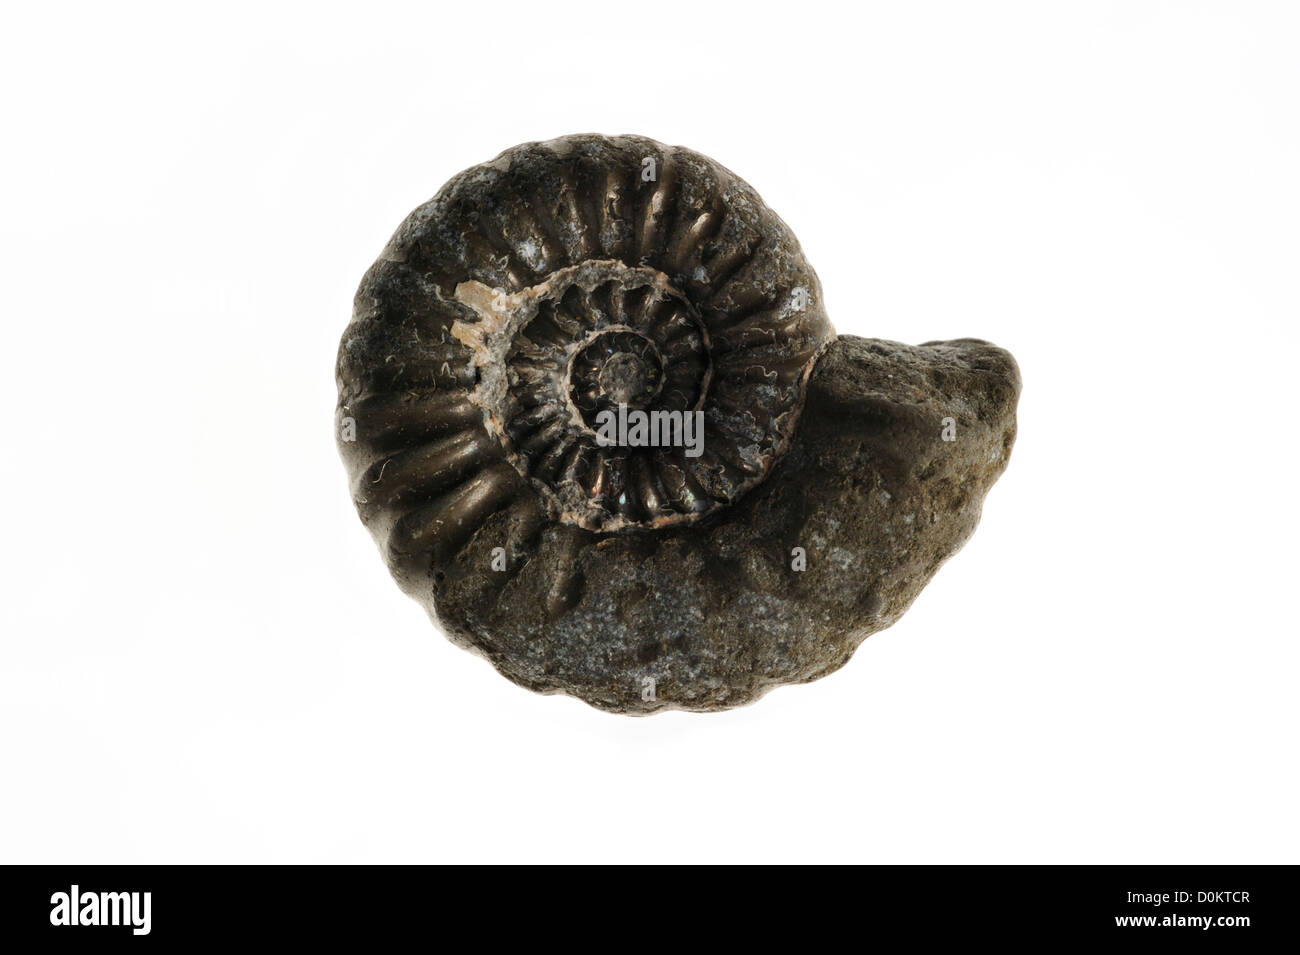 Promicroceras planicosta fossile d'ammonite de Lyme Regis, sur la côte jurassique, Dorset, dans le sud de l'Angleterre, Royaume-Uni Banque D'Images